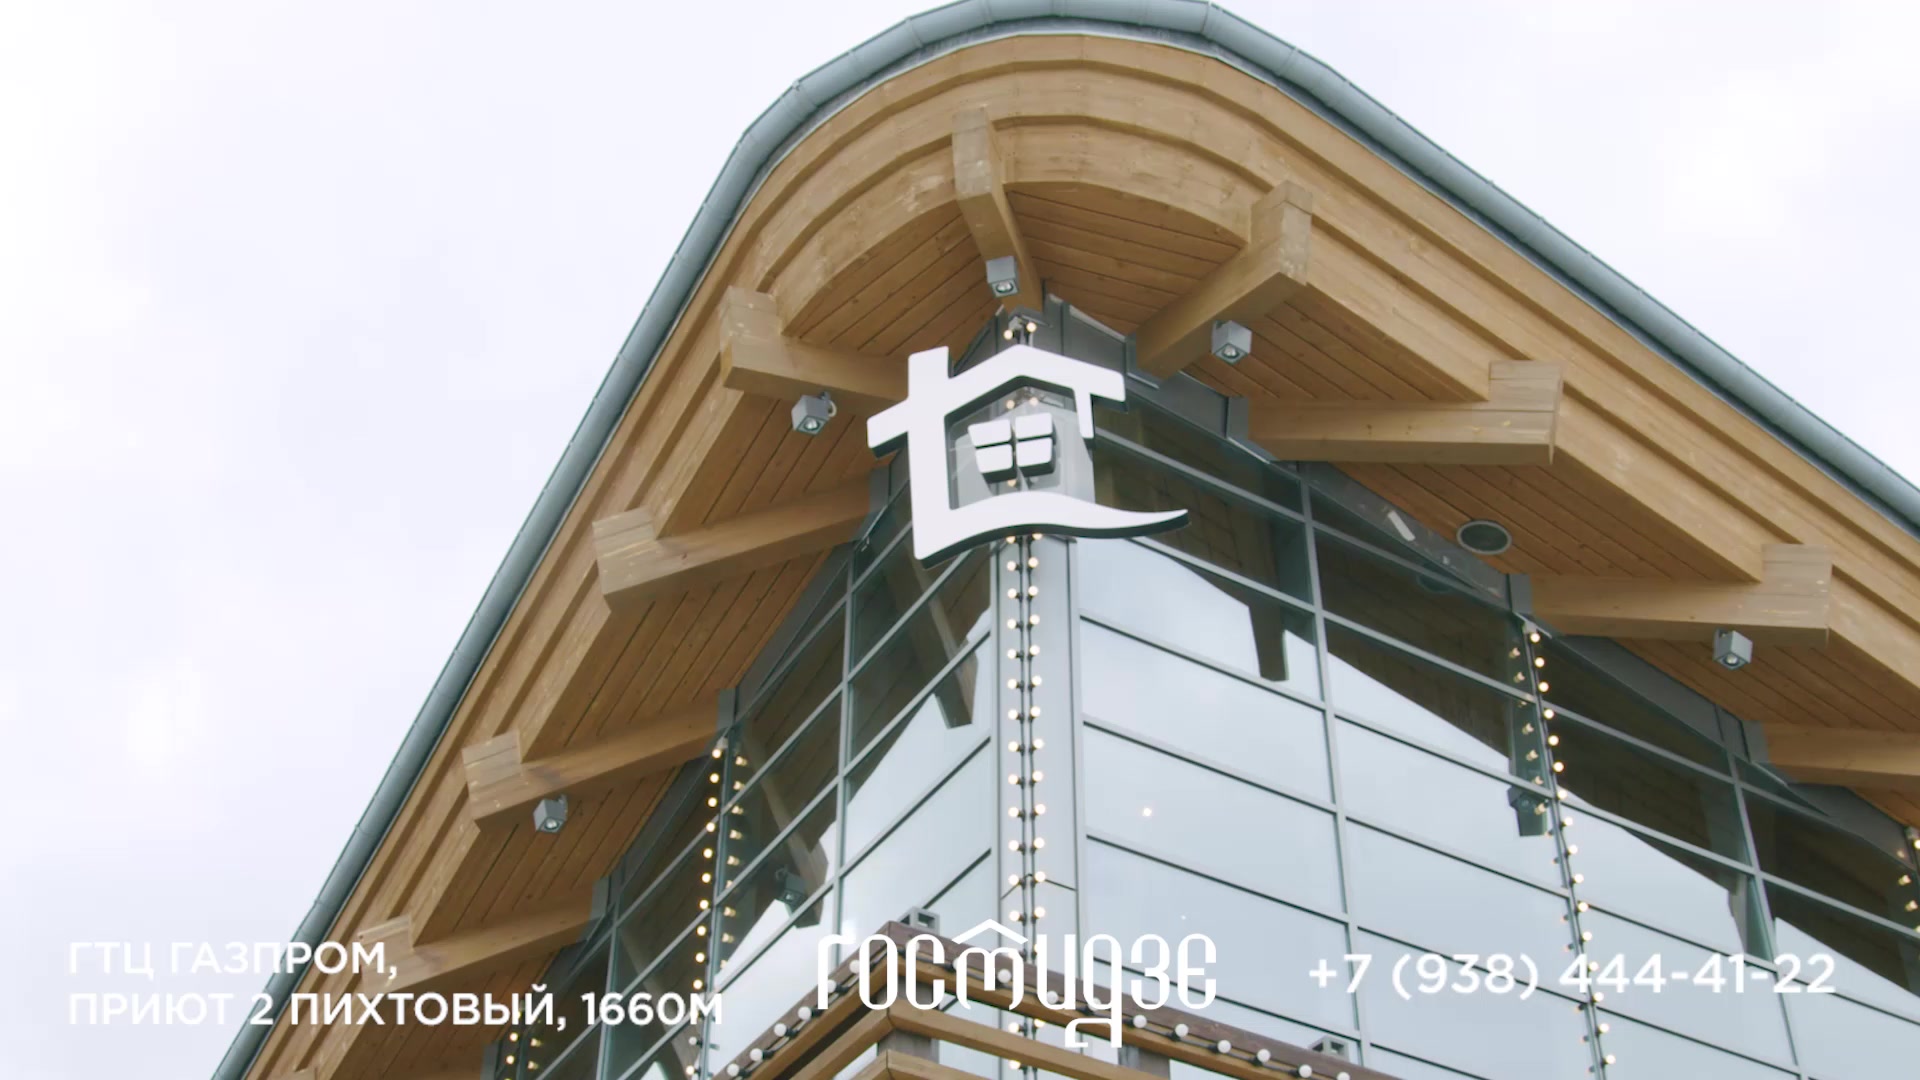 Гостидзе Газпром (Краснодарский край, городской округ Сочи, курорт Красная Поляна, подъёмник-гондола А3, Пихтовая Поляна 1660 м), ресторан в Сочи